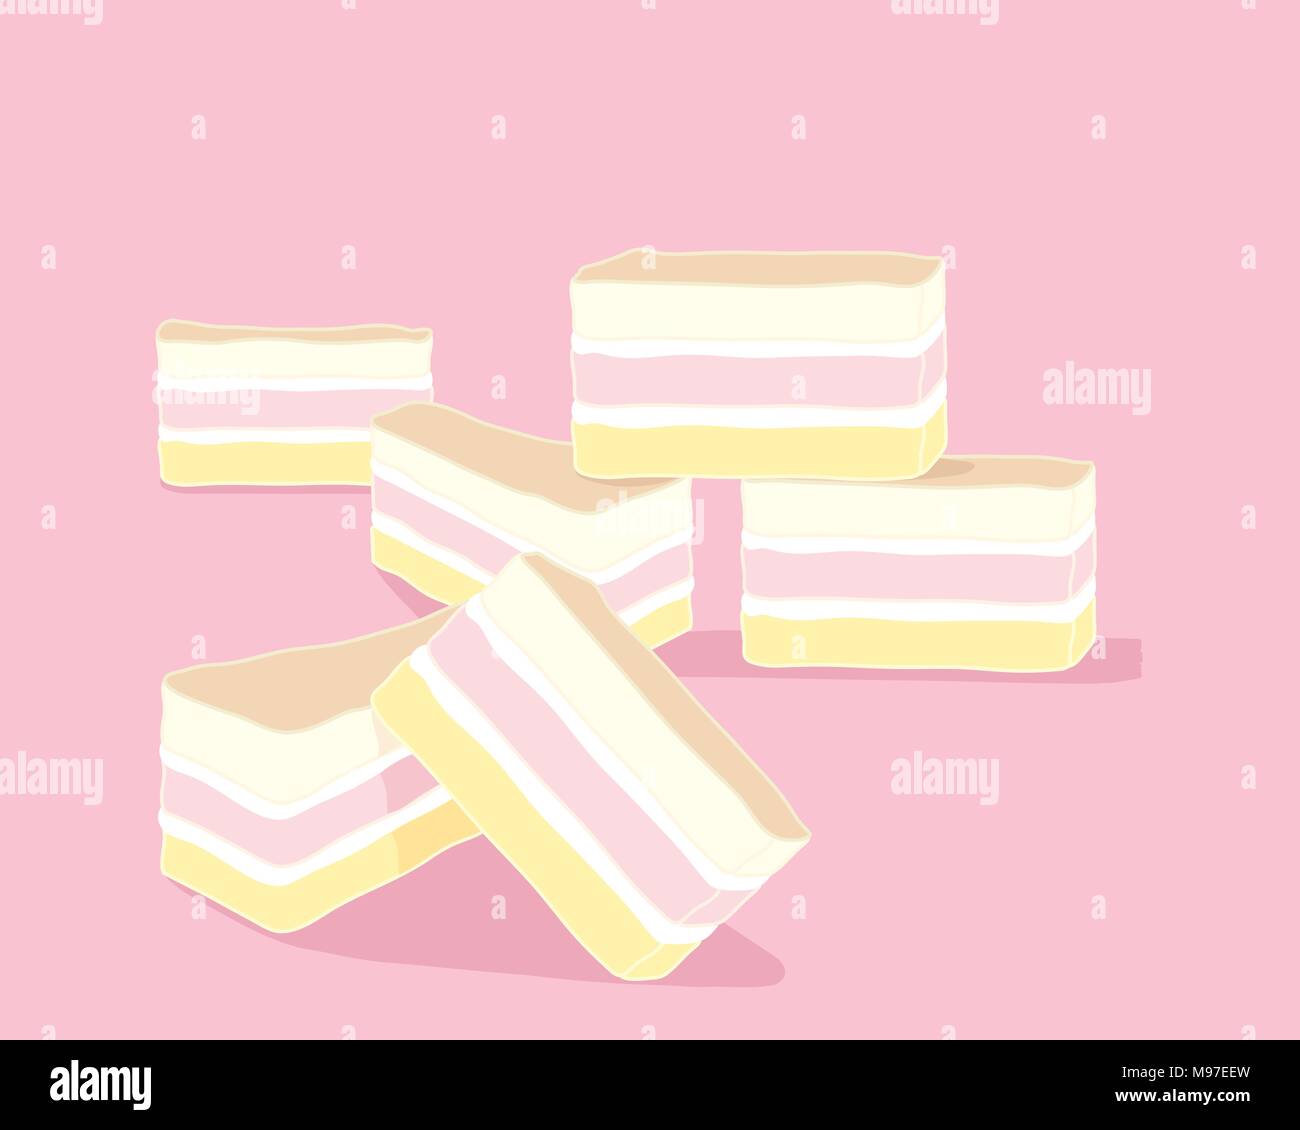 Un vecteur illustration au format eps de tranches de gâteau ange rose en couches de jaune et blanc crème au beurre sur un fond rose Illustration de Vecteur